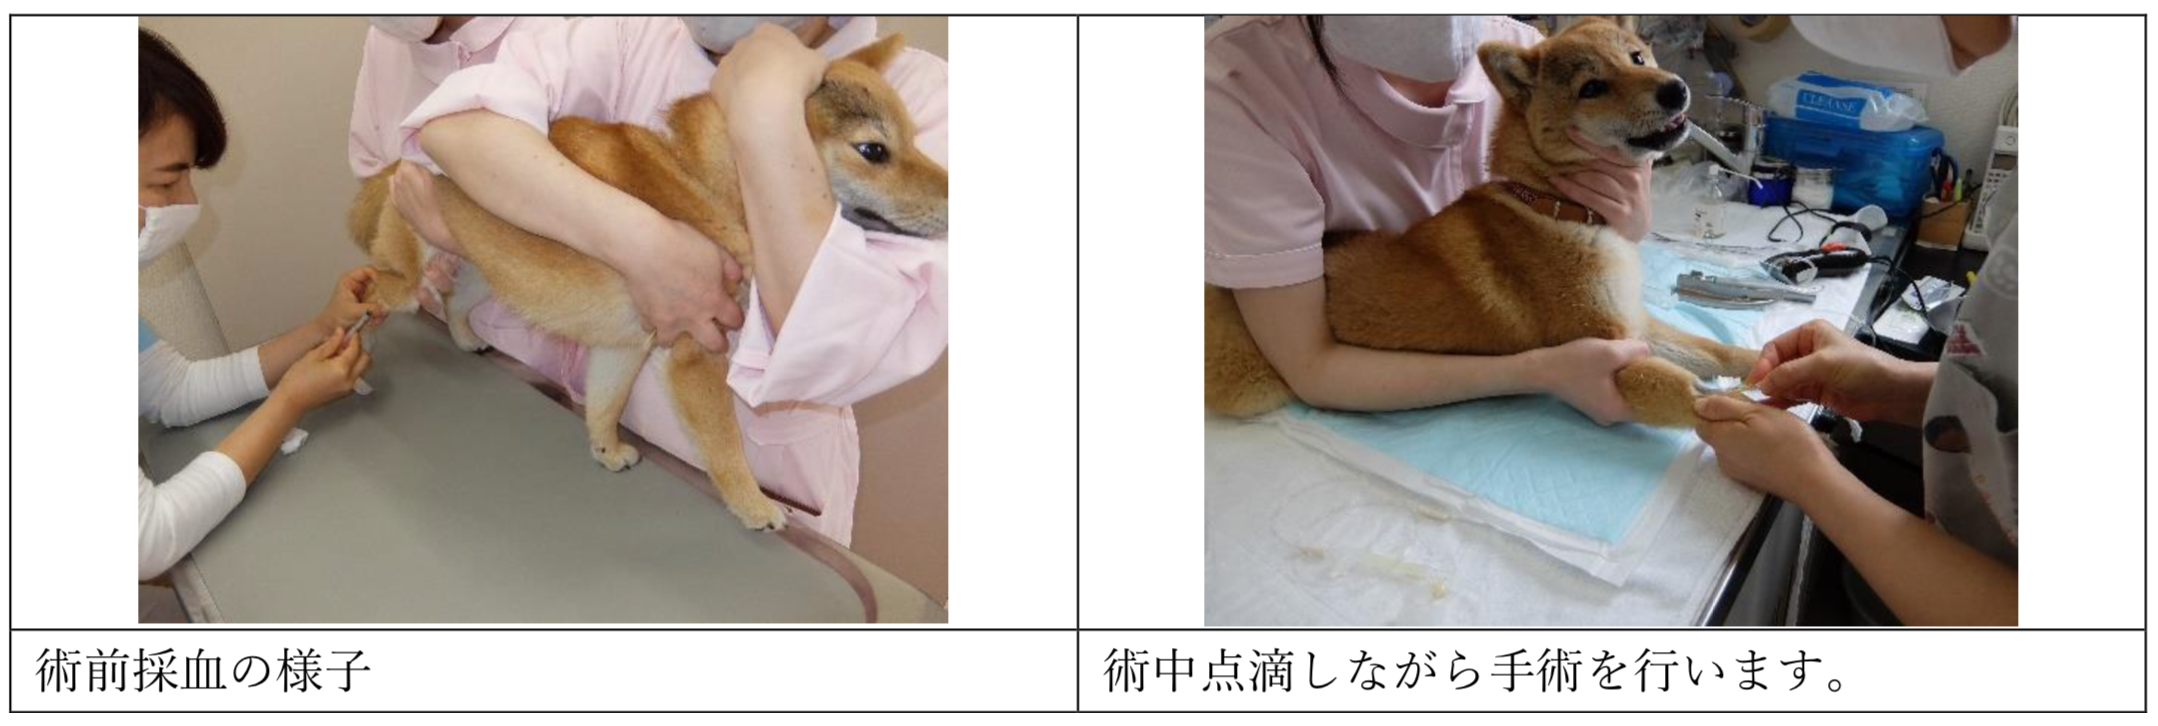 富士市のミル動物病院_避妊手術について